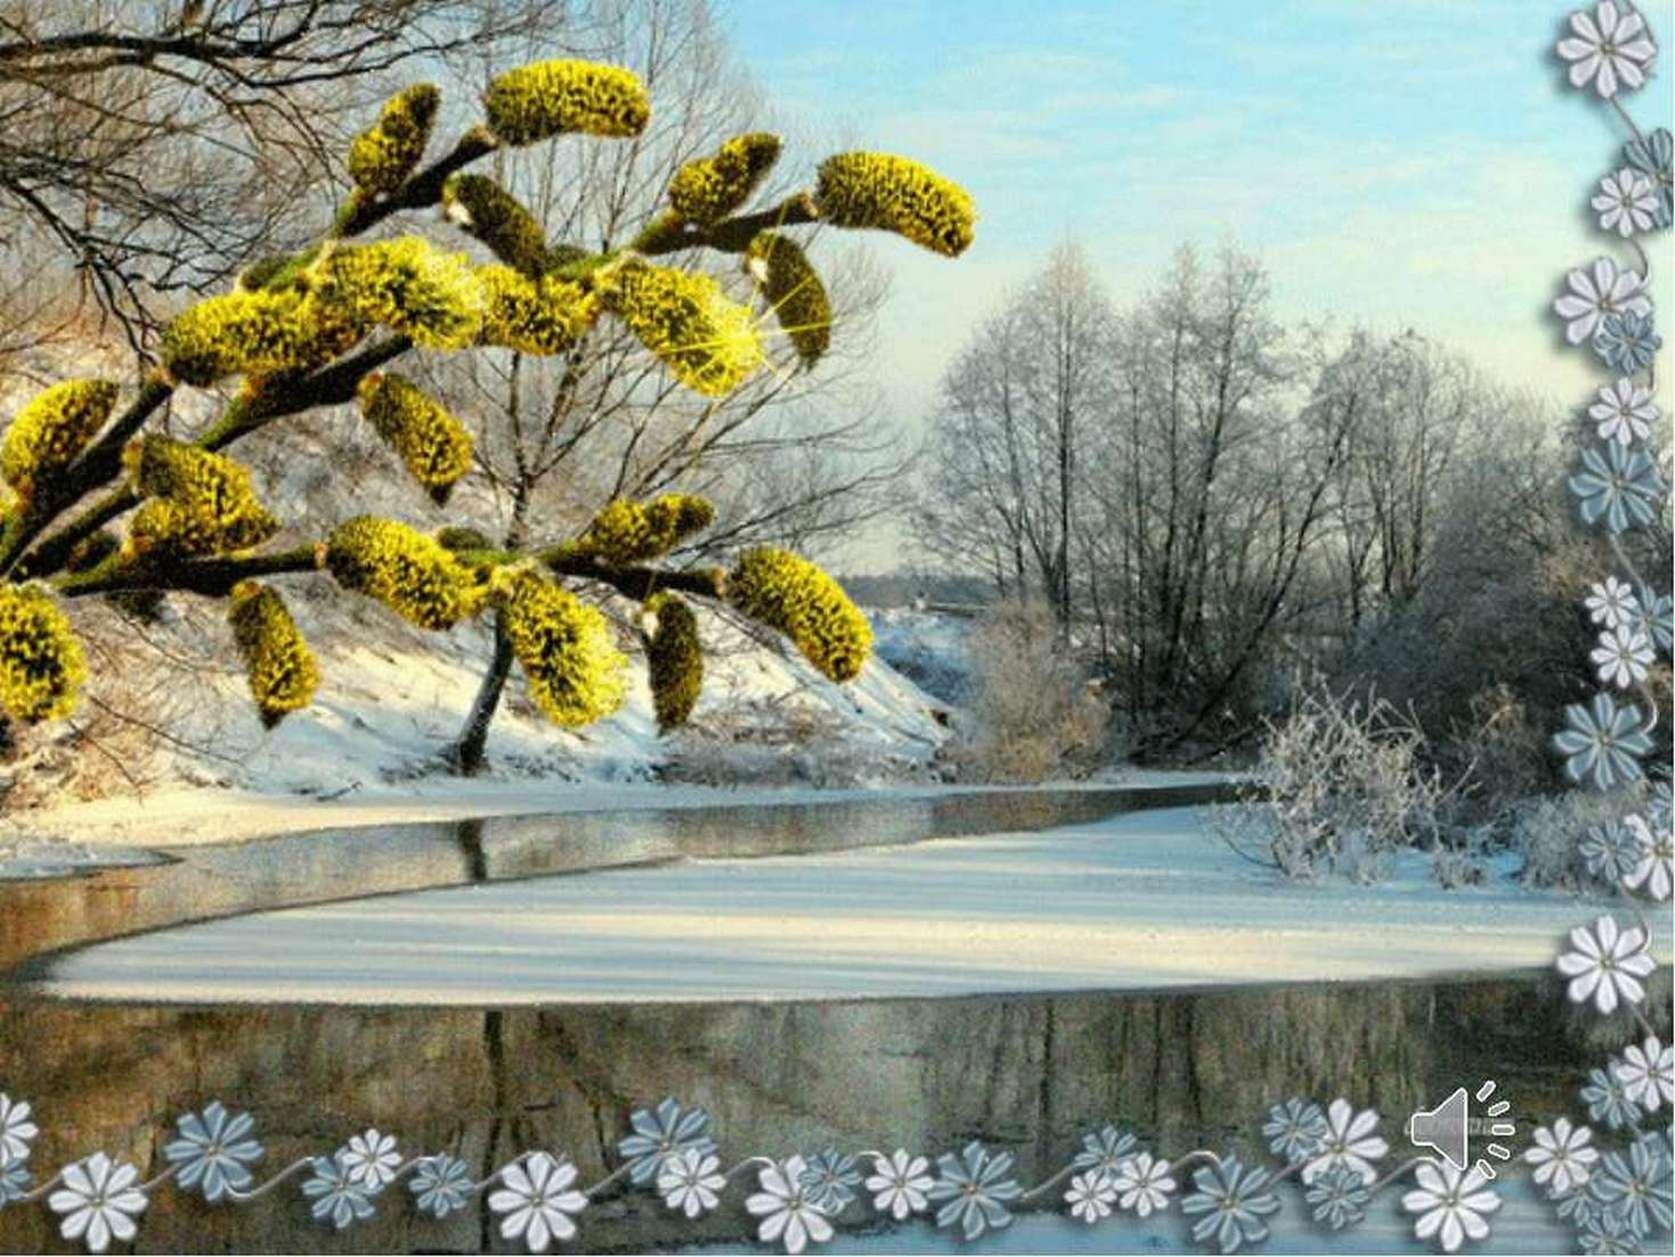 Конец зимы, весны начало, Так лишь бывает в феврале...Oleg Molchanov